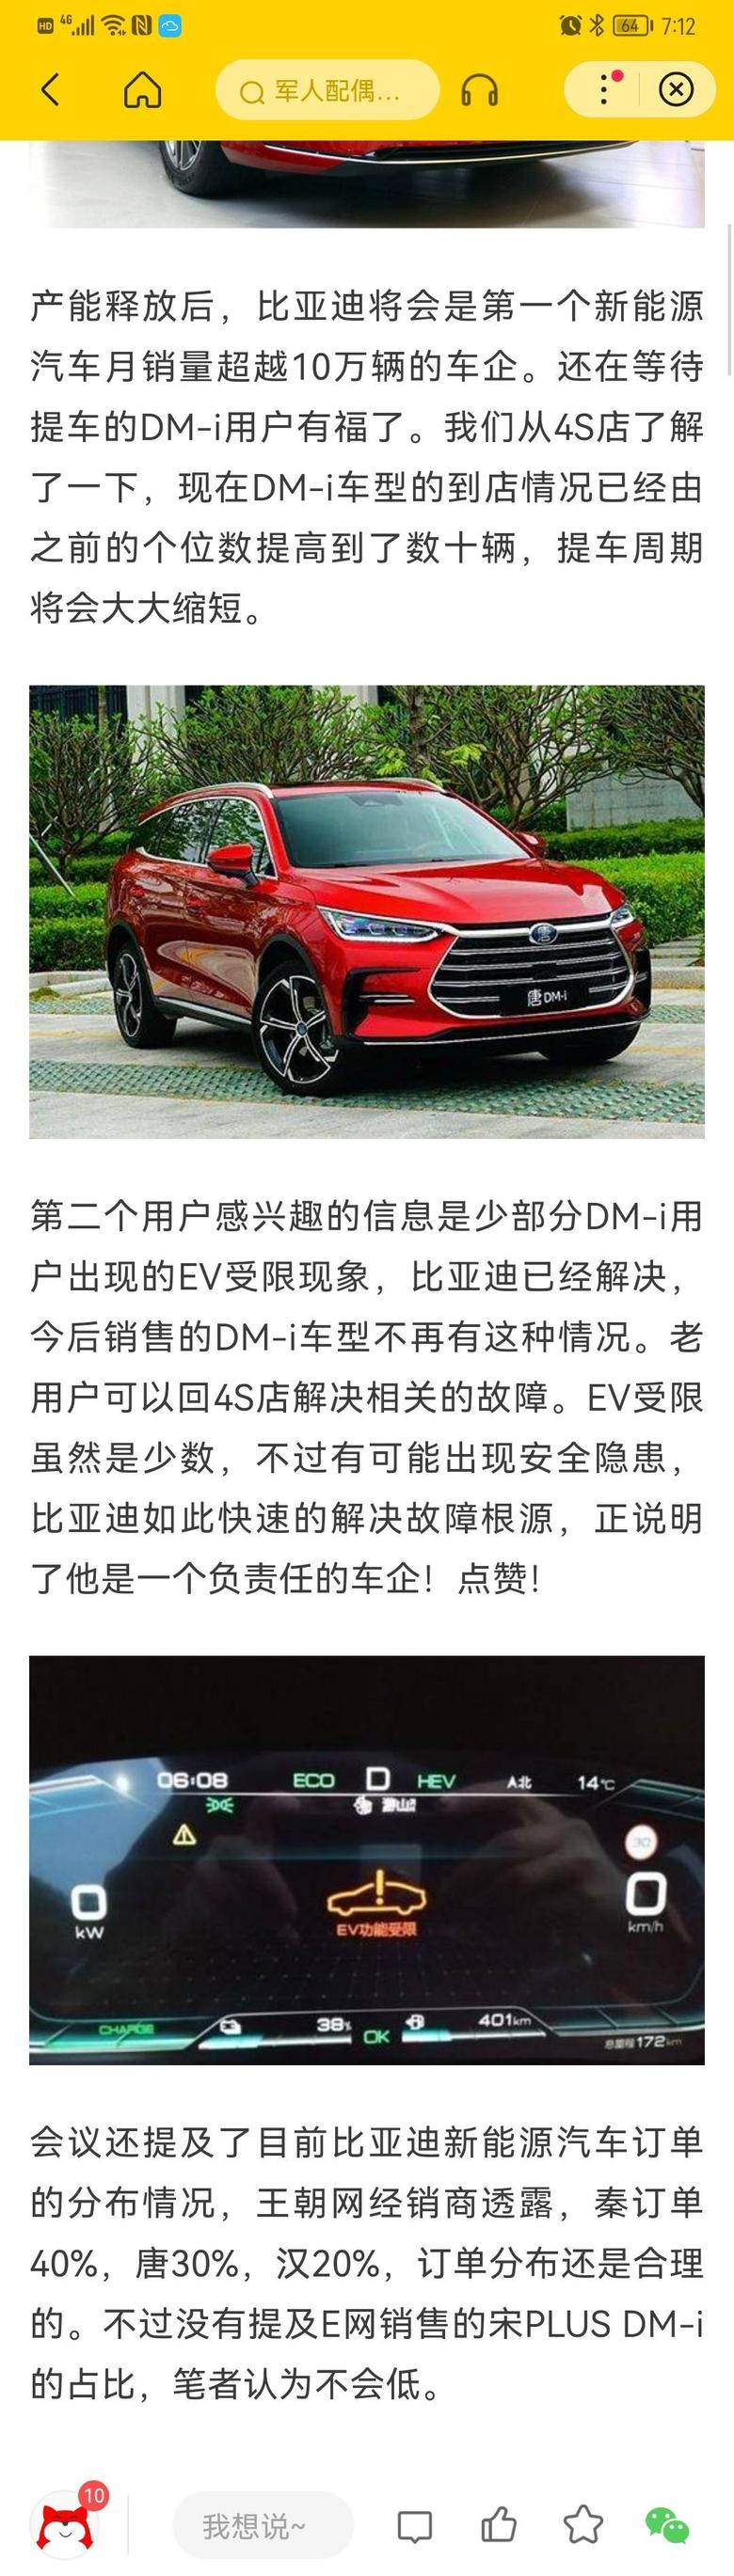 唐dm 说是湖南工厂投产后产能提升了，怎么好像还很多等了4、5月的人没提车